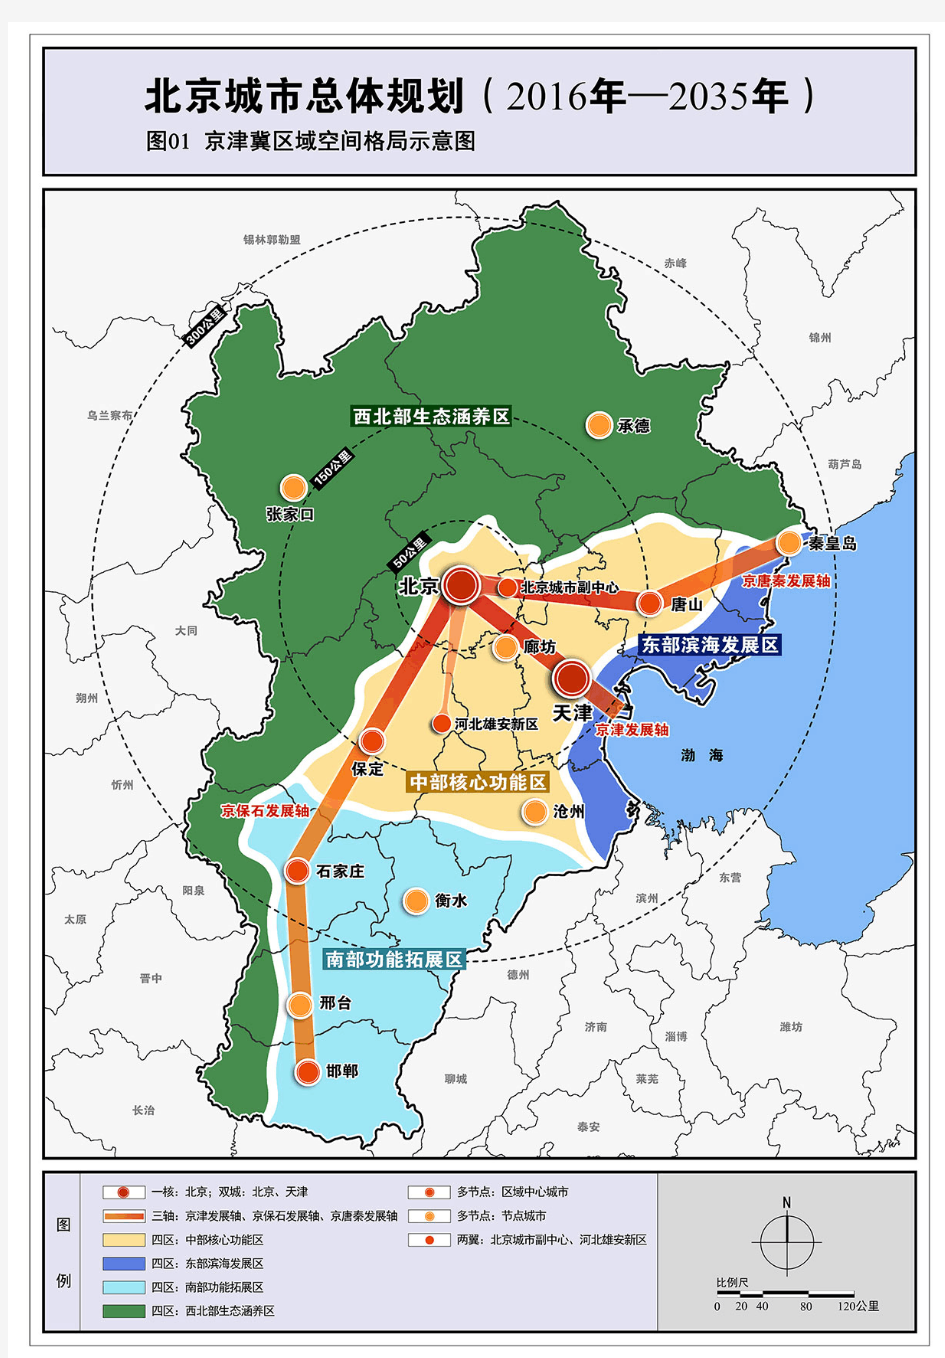 北京城市总体规划(2016-2035)图纸